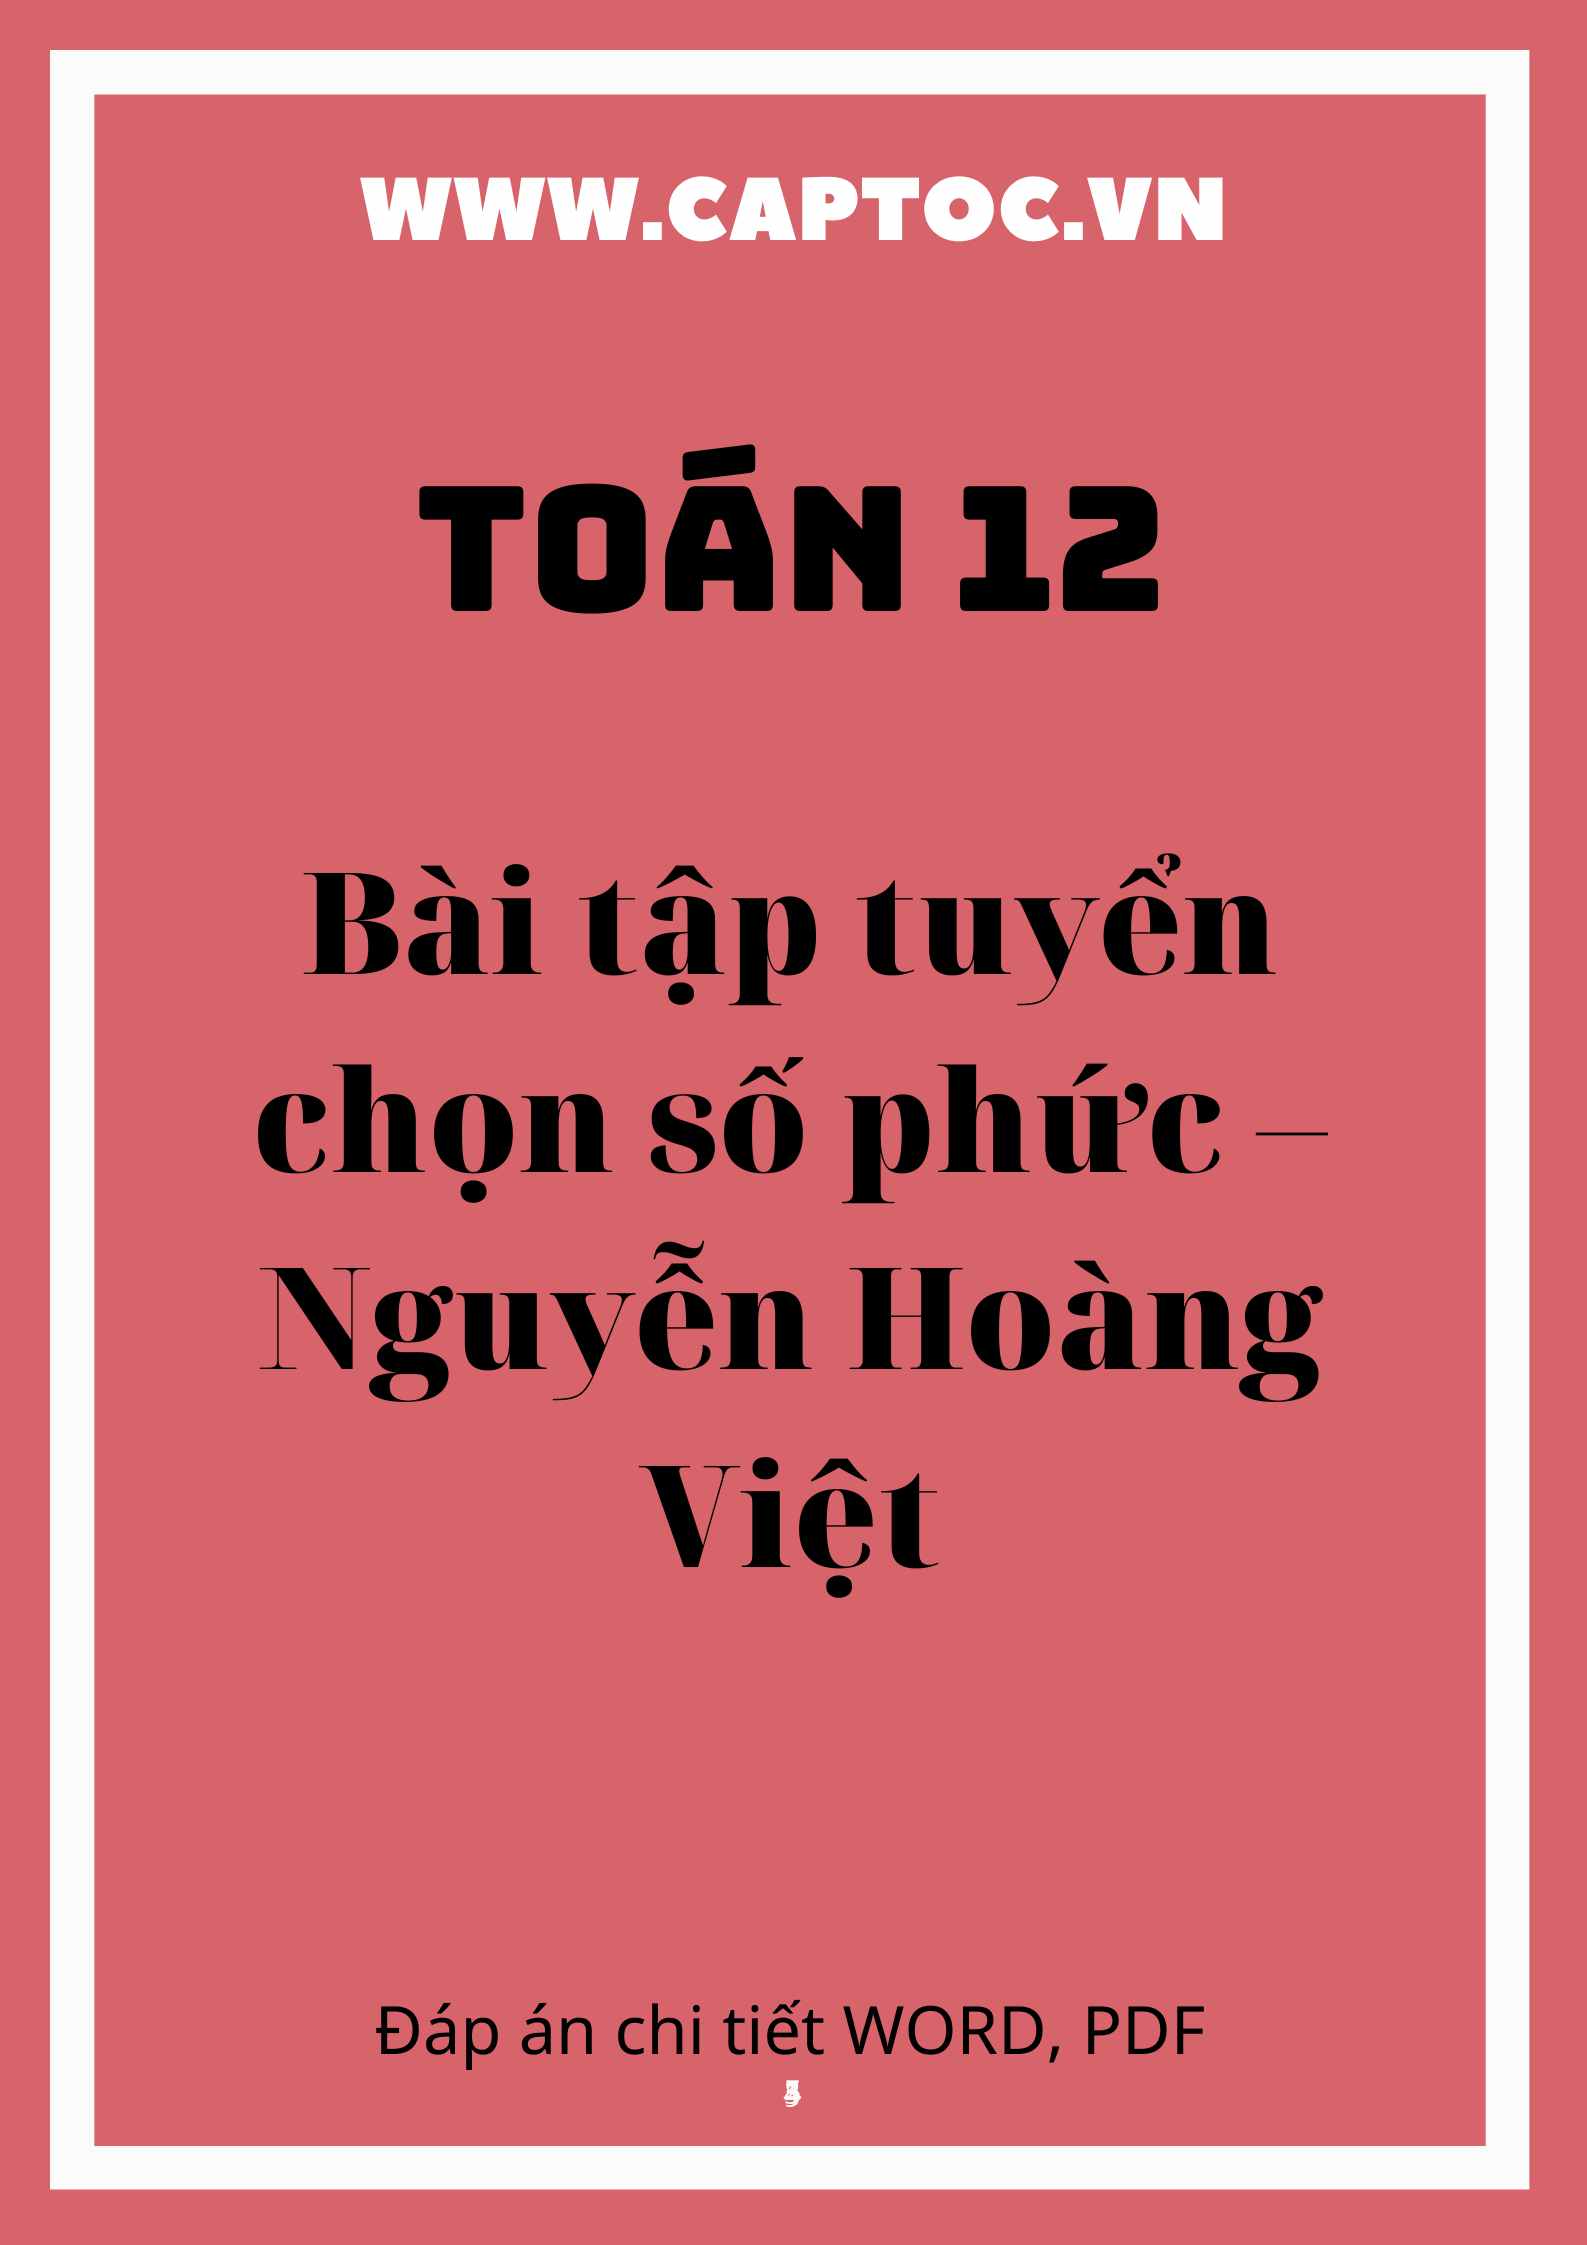 Bài tập tuyển chọn số phức – Nguyễn Hoàng Việt